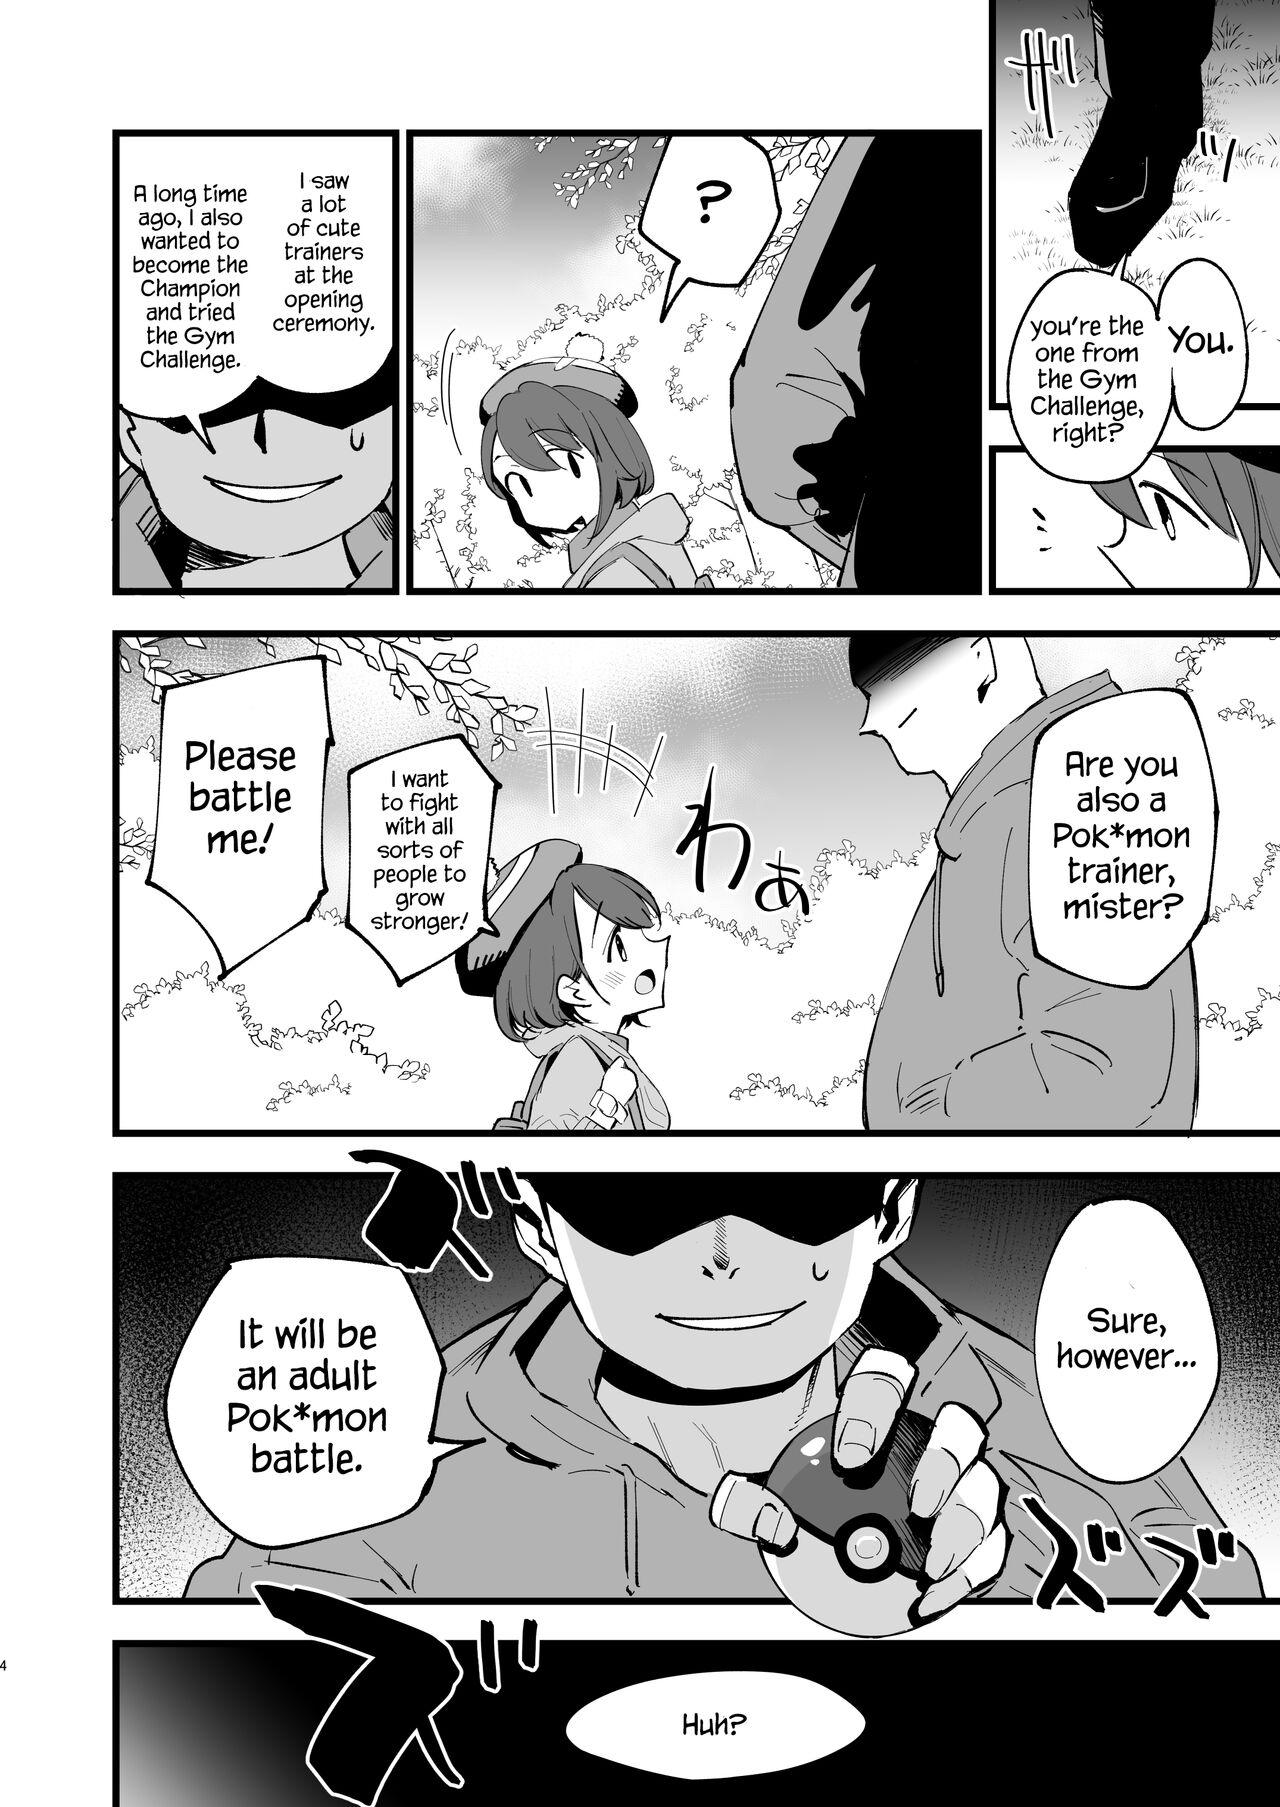 Self Haiboku Yuuri-chan - Pokemon | pocket monsters Old Vs Young - Page 4